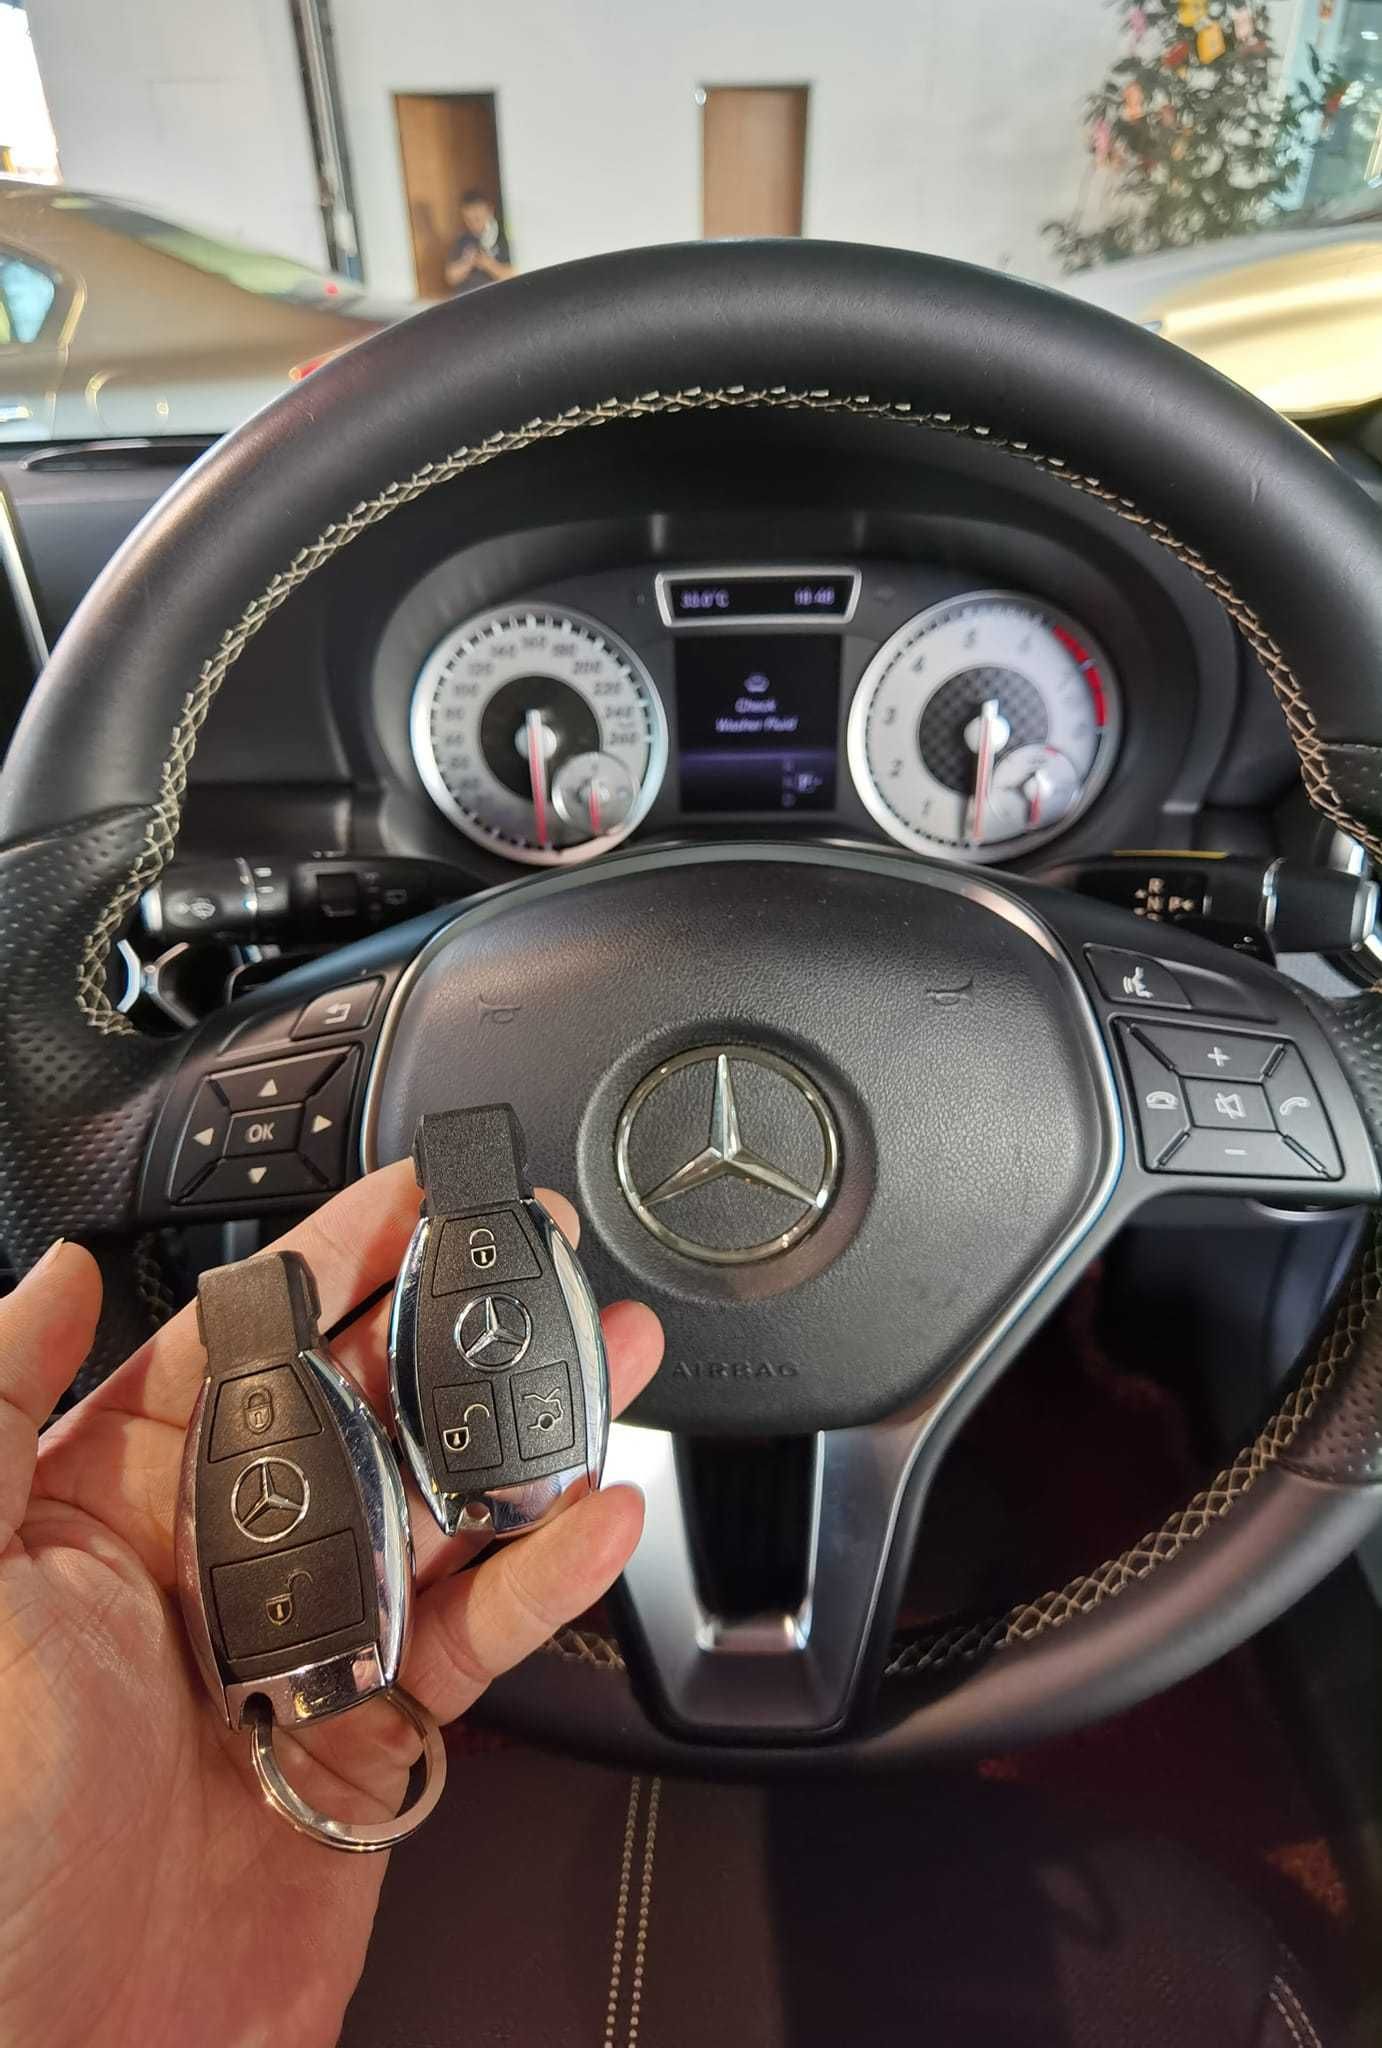 Ремонт, восстановление, программирование ключей и замков Mercedes-Benz